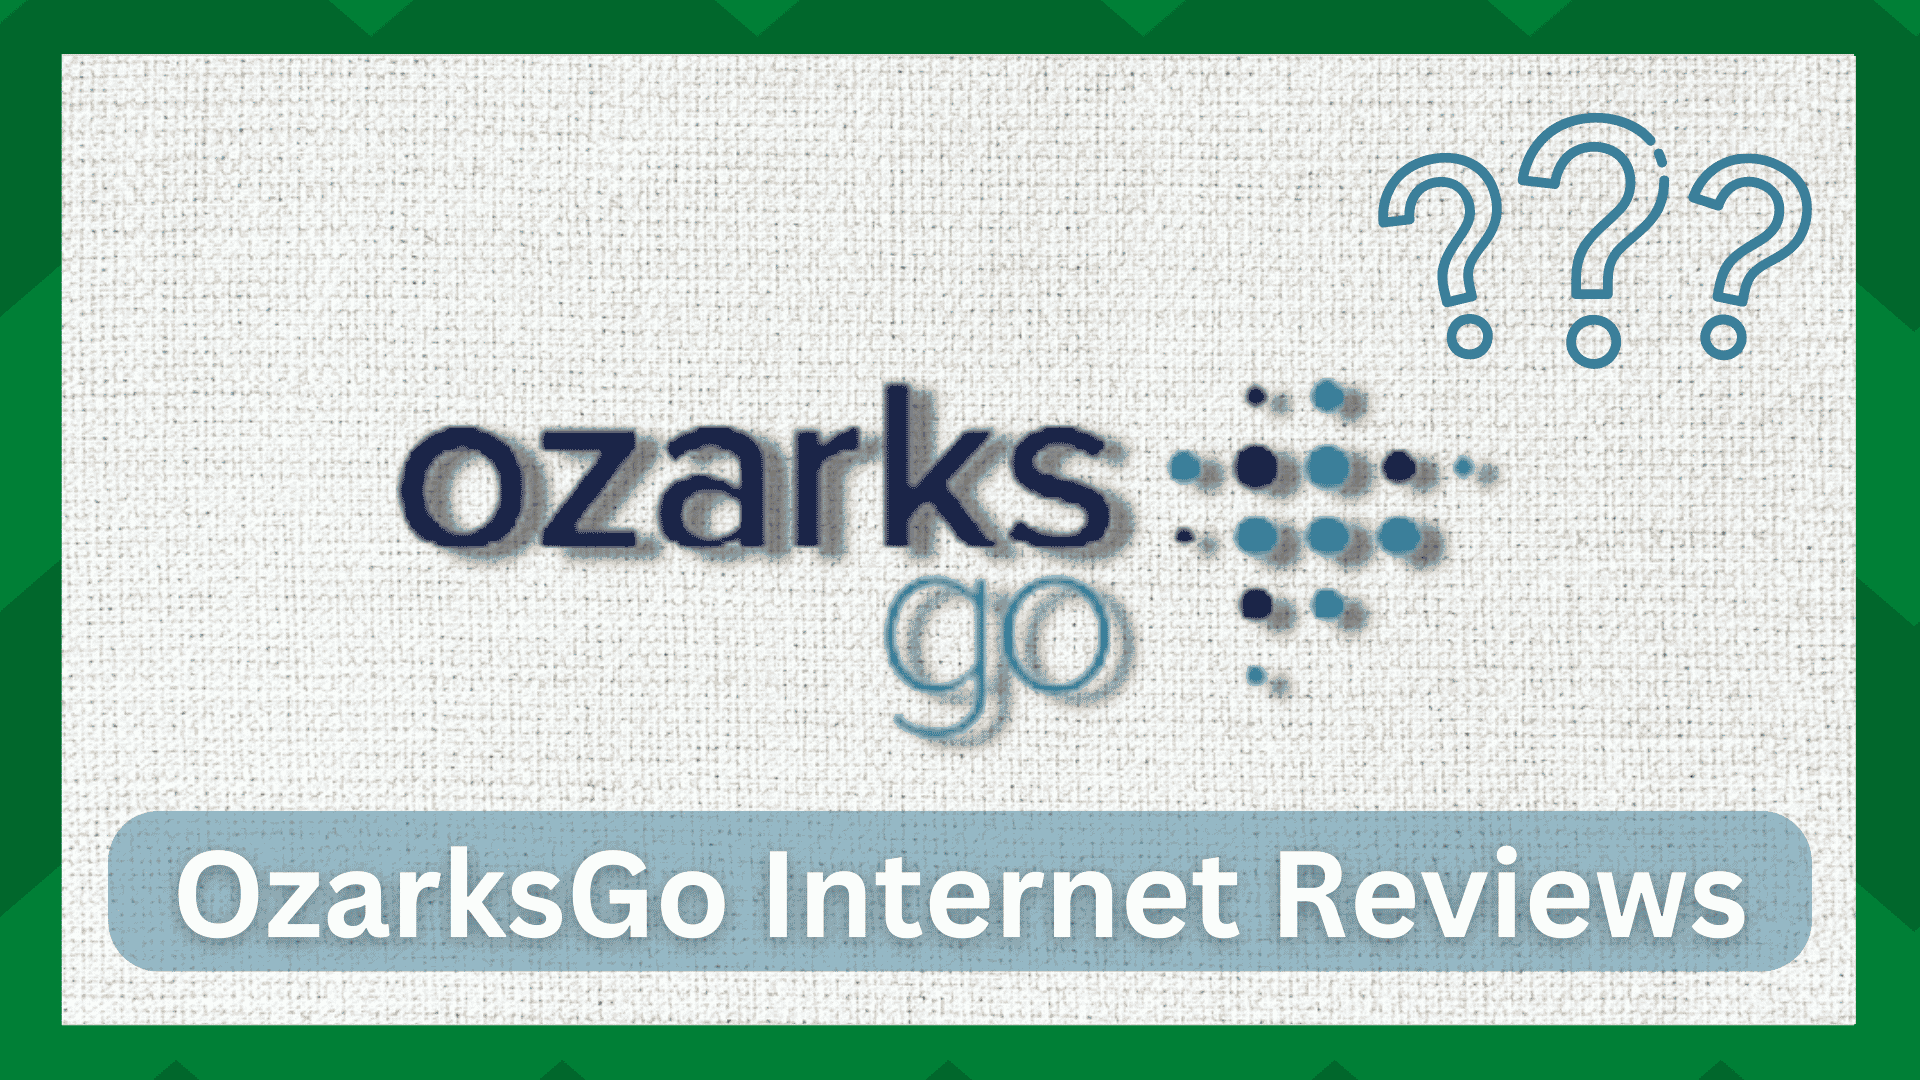 OzarksGo Internet Beoordelingen - Is het goed?